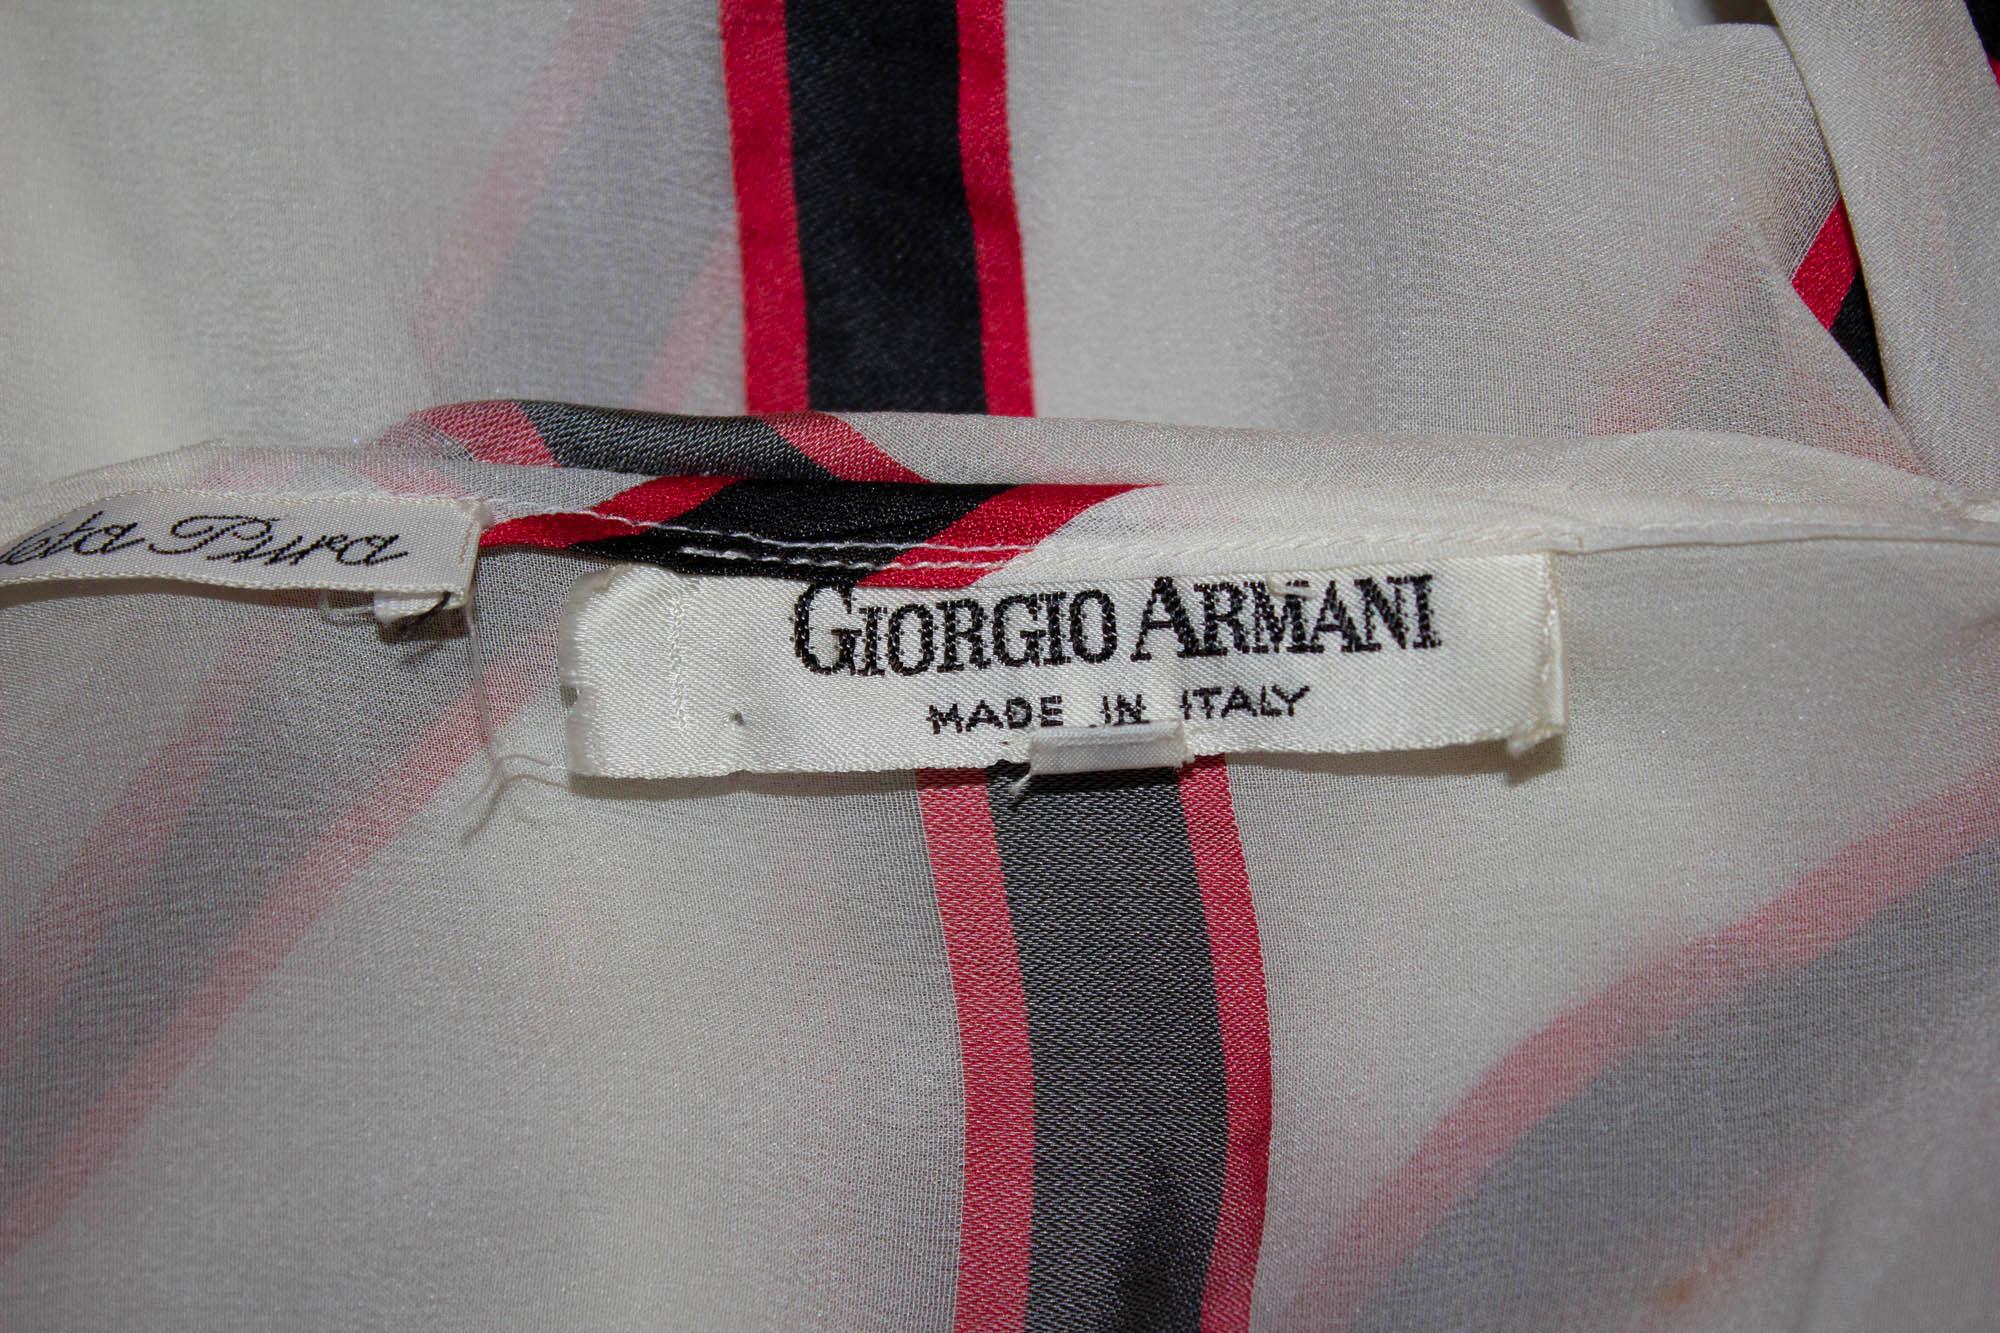 Une blouse en soie vintage chic et féminine de Giorgio Armani. Le chemisier a un fond blanc avec des détails de rayures rouges et noires. Il présente une encolure carrée, un lien au niveau du cou, deux poches sur le devant et des poignets boutonnés.